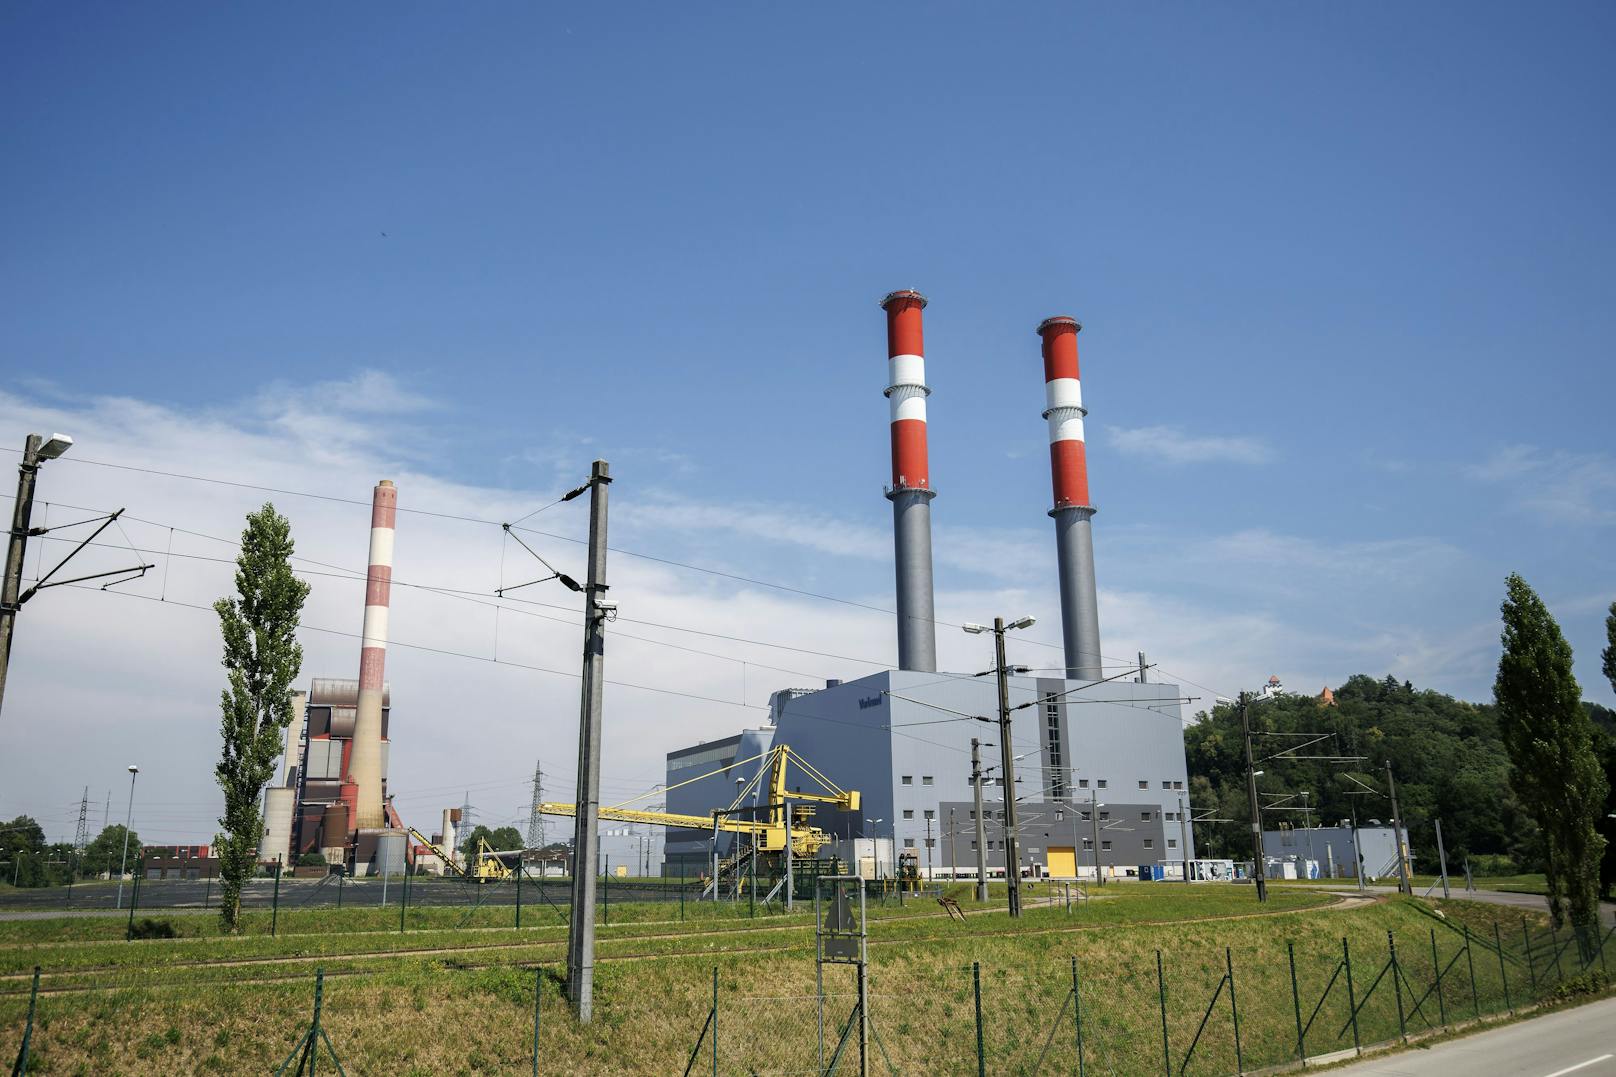 SPÖ stellt jetzt Kompromiss für Kohlekraftwerk vor